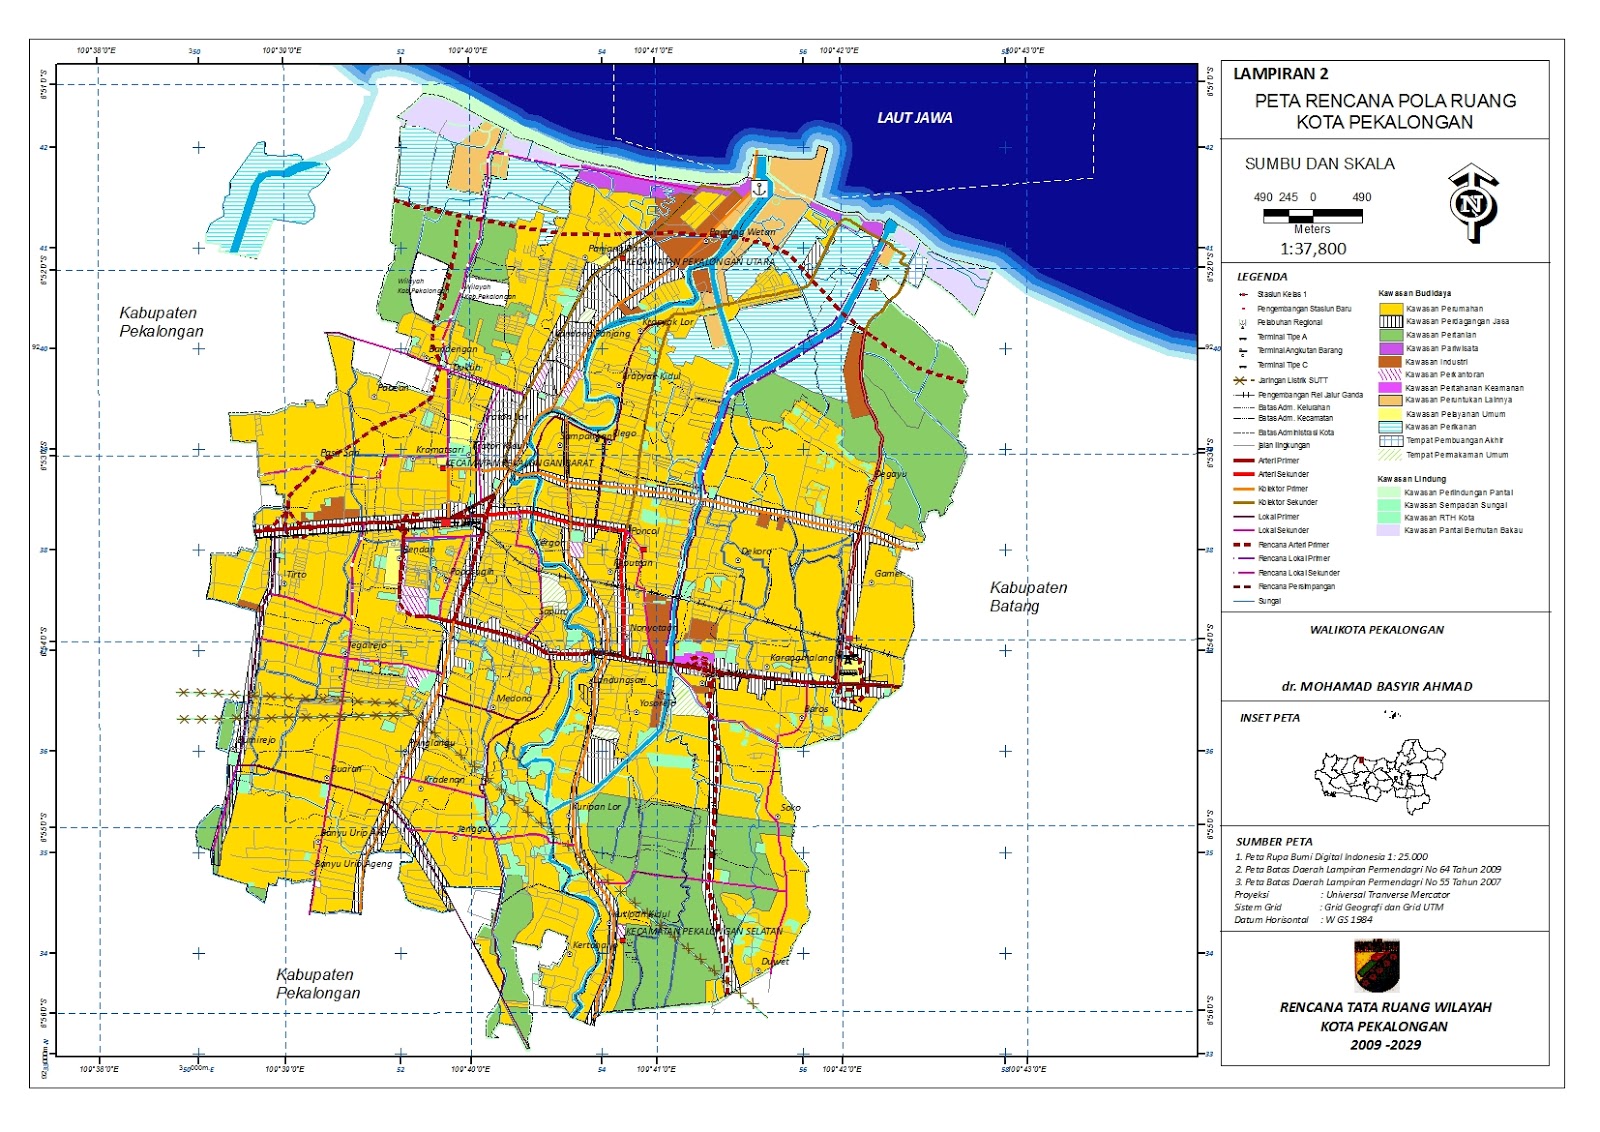 Peta Kota: Peta Kota Pekalongan